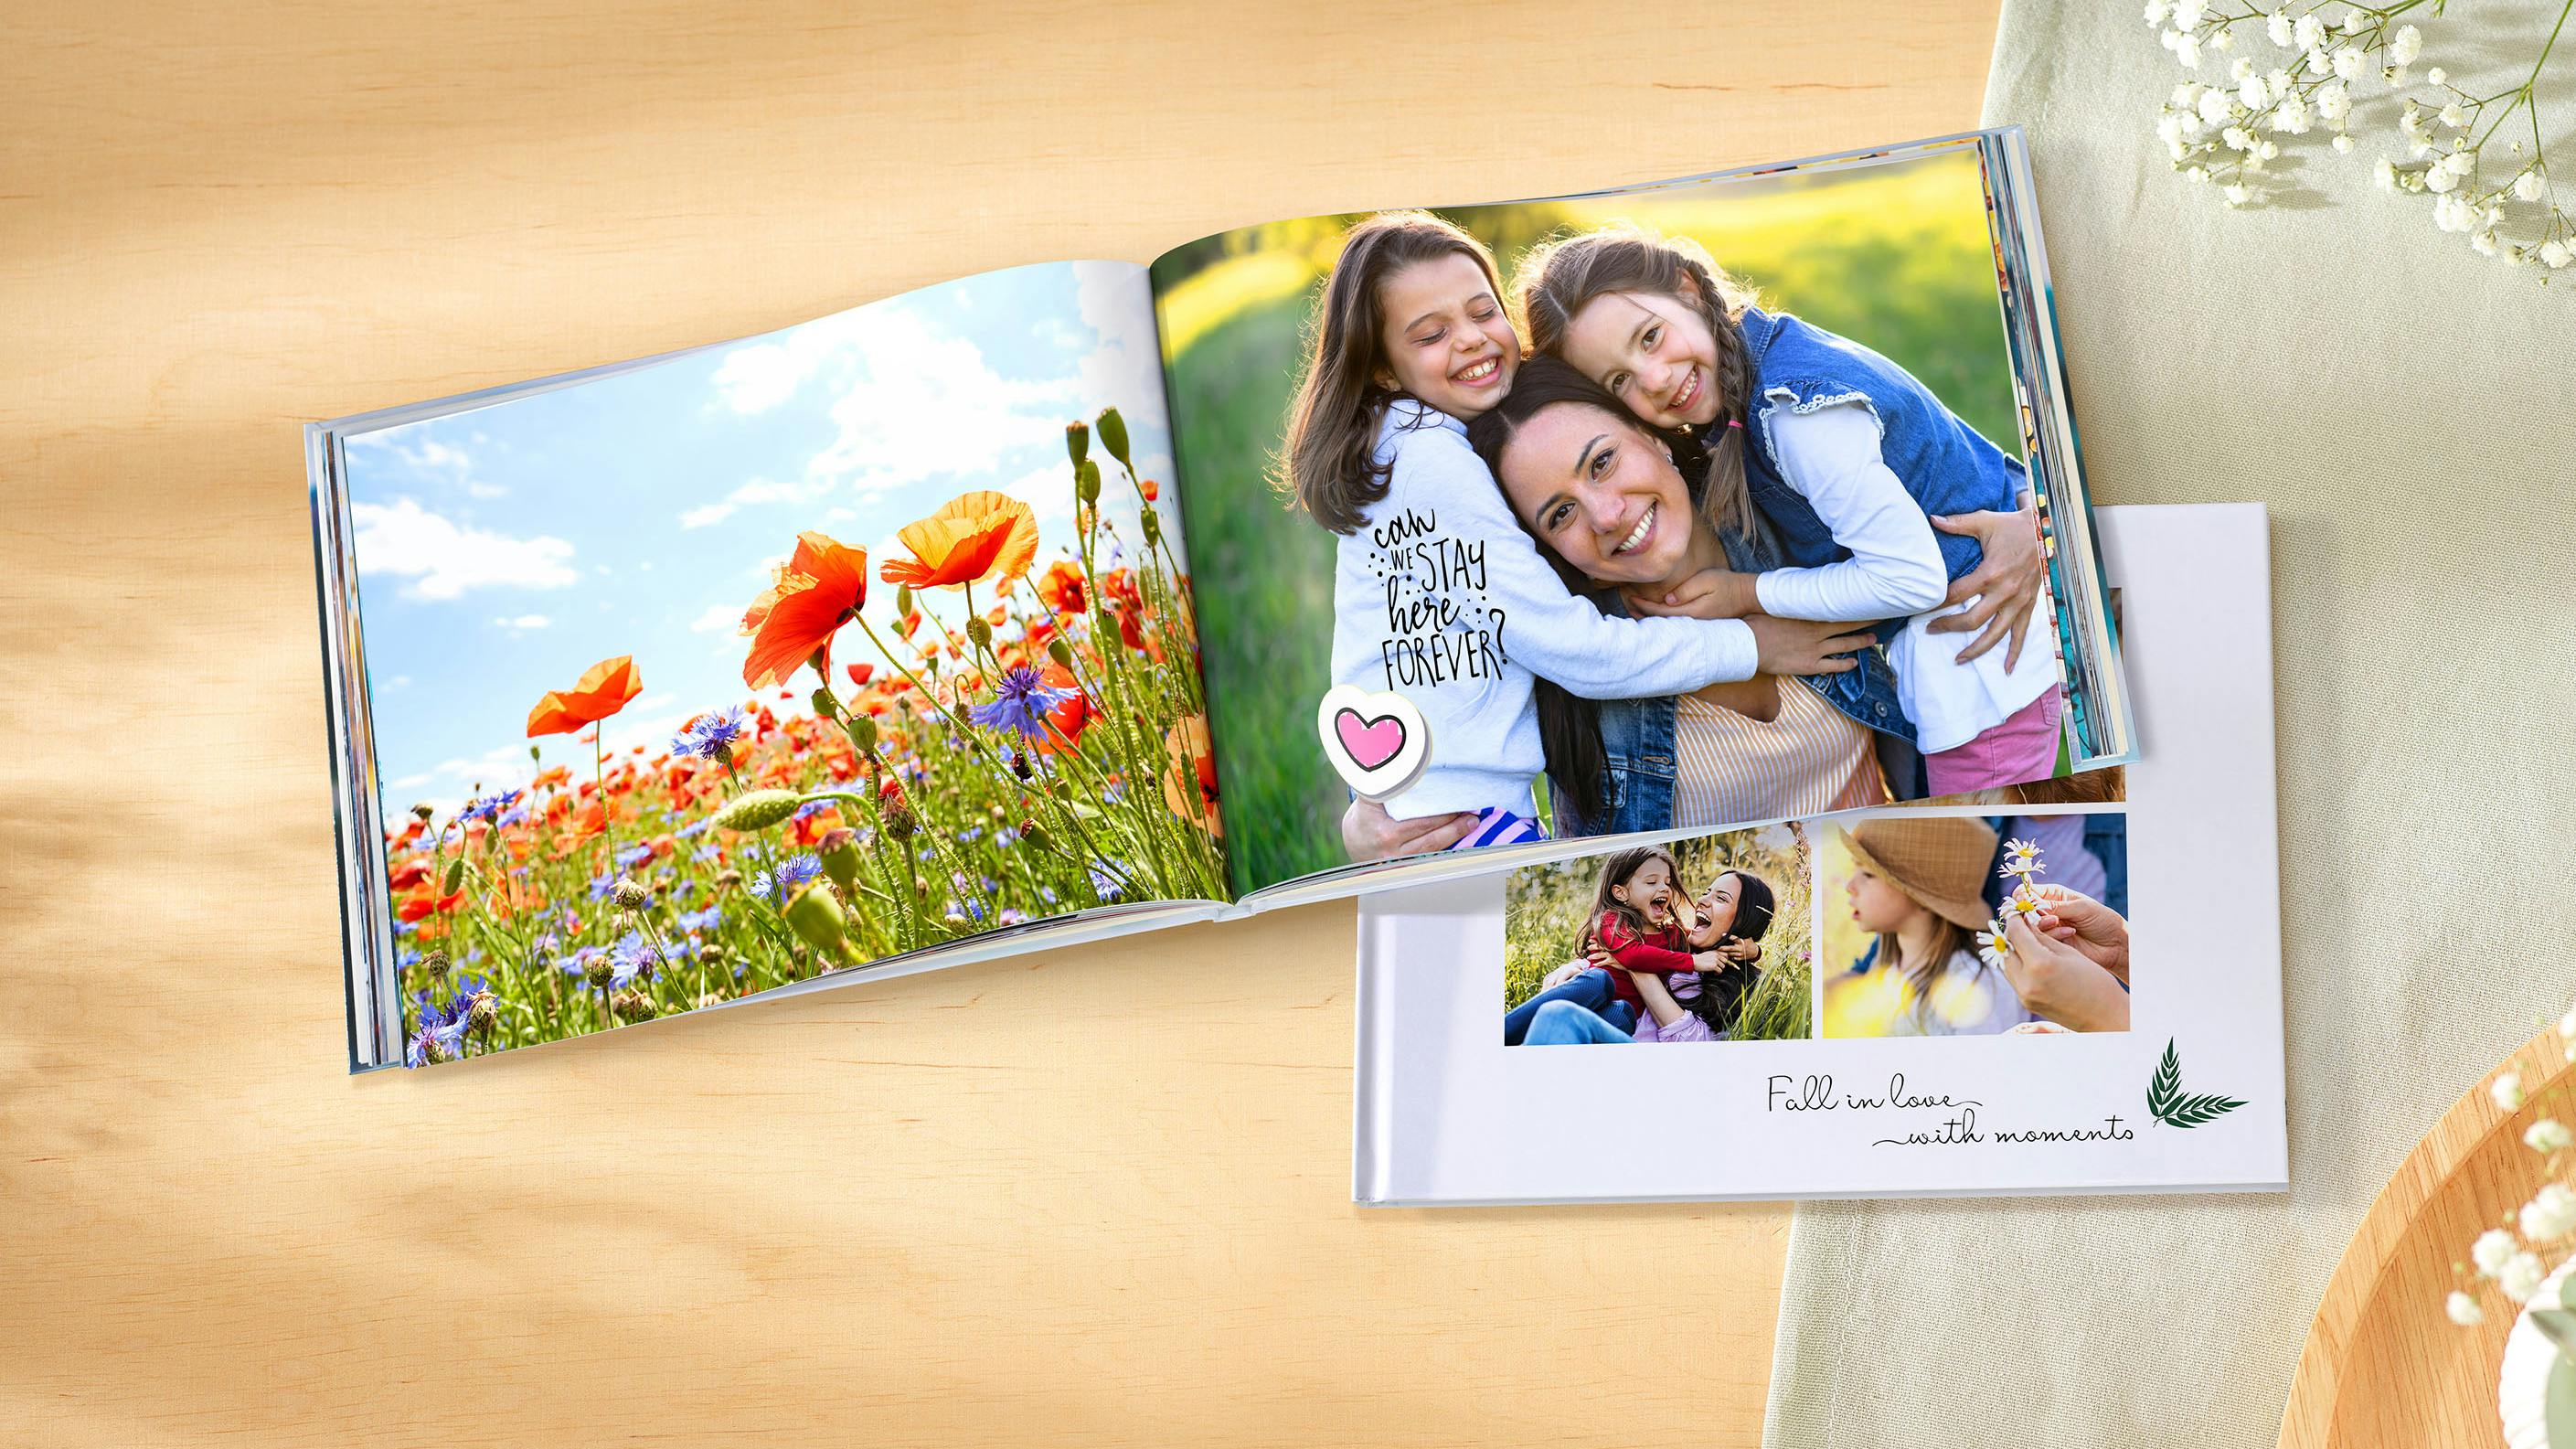 Álbum de fotos personalizado en formato panorámico con fotos familiares y stickers